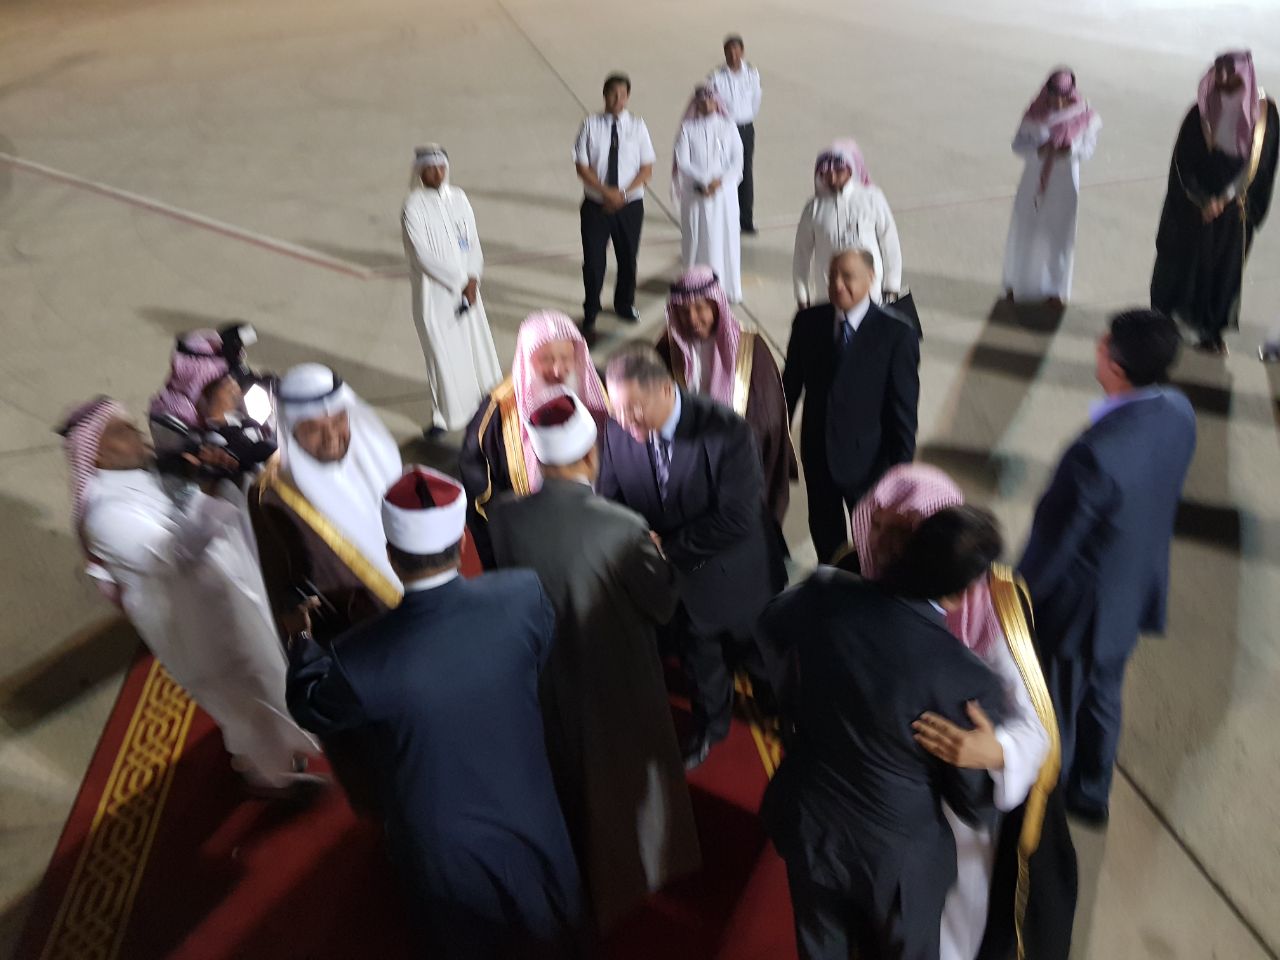 الإمام الأكبر يصل المملكة العربية السعودية لأداء مناسك العمرة